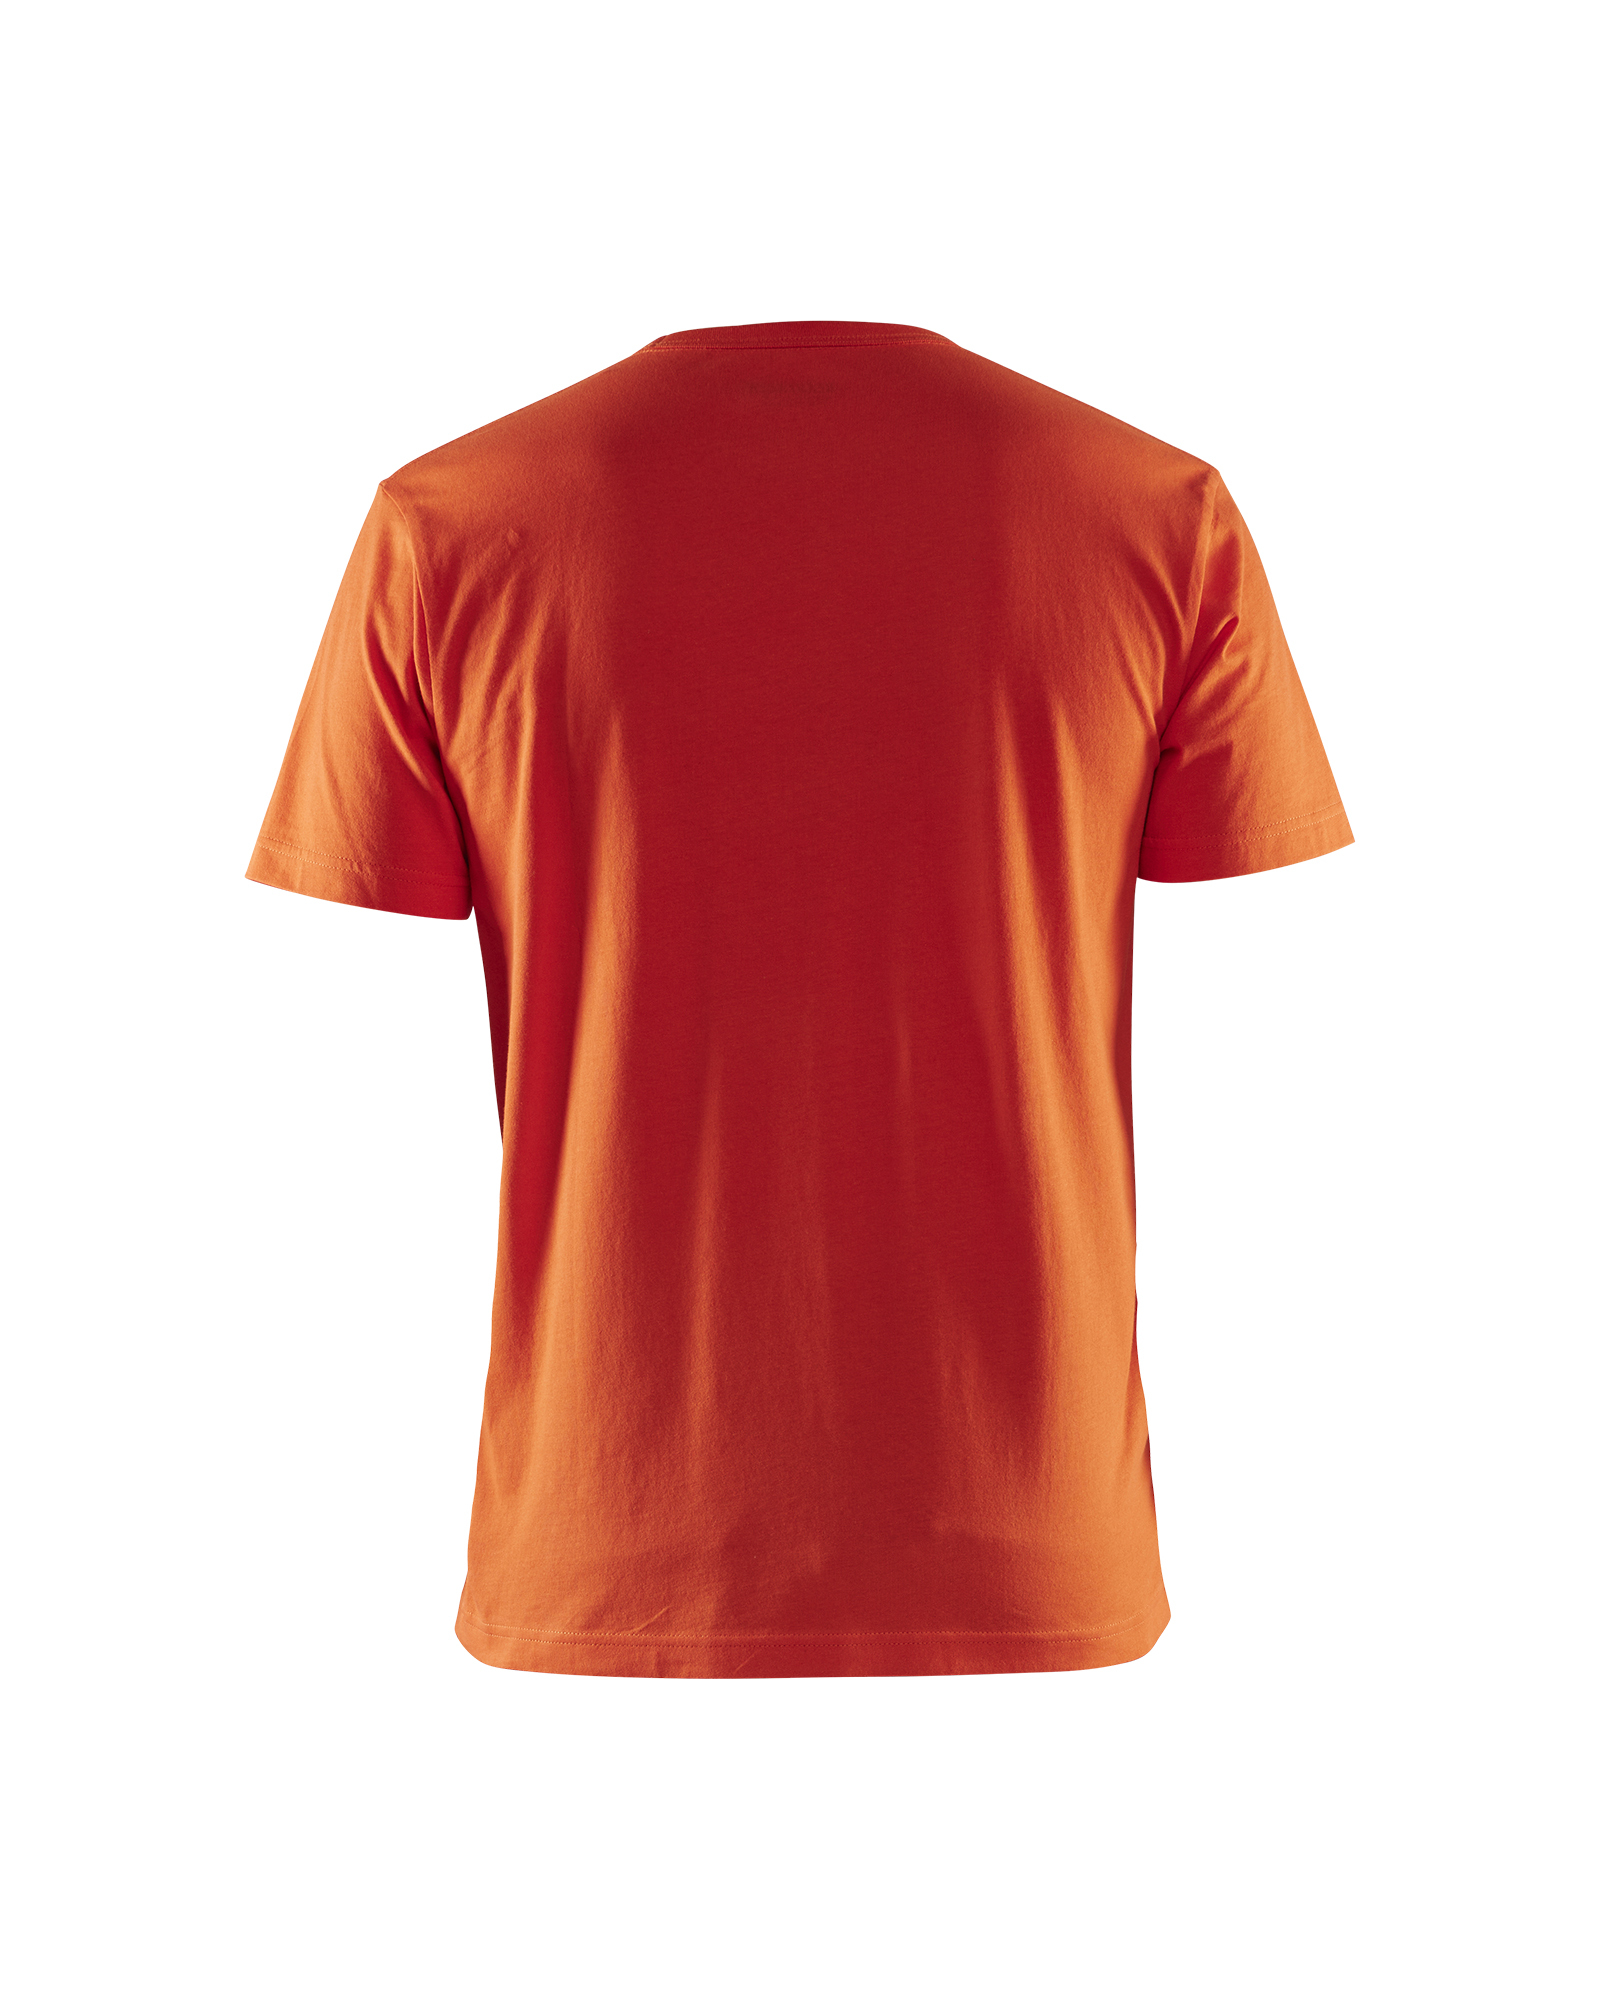 T-shirt imprimé 3D Blåkläder 3531 Orange fluo Blaklader - 353110425409